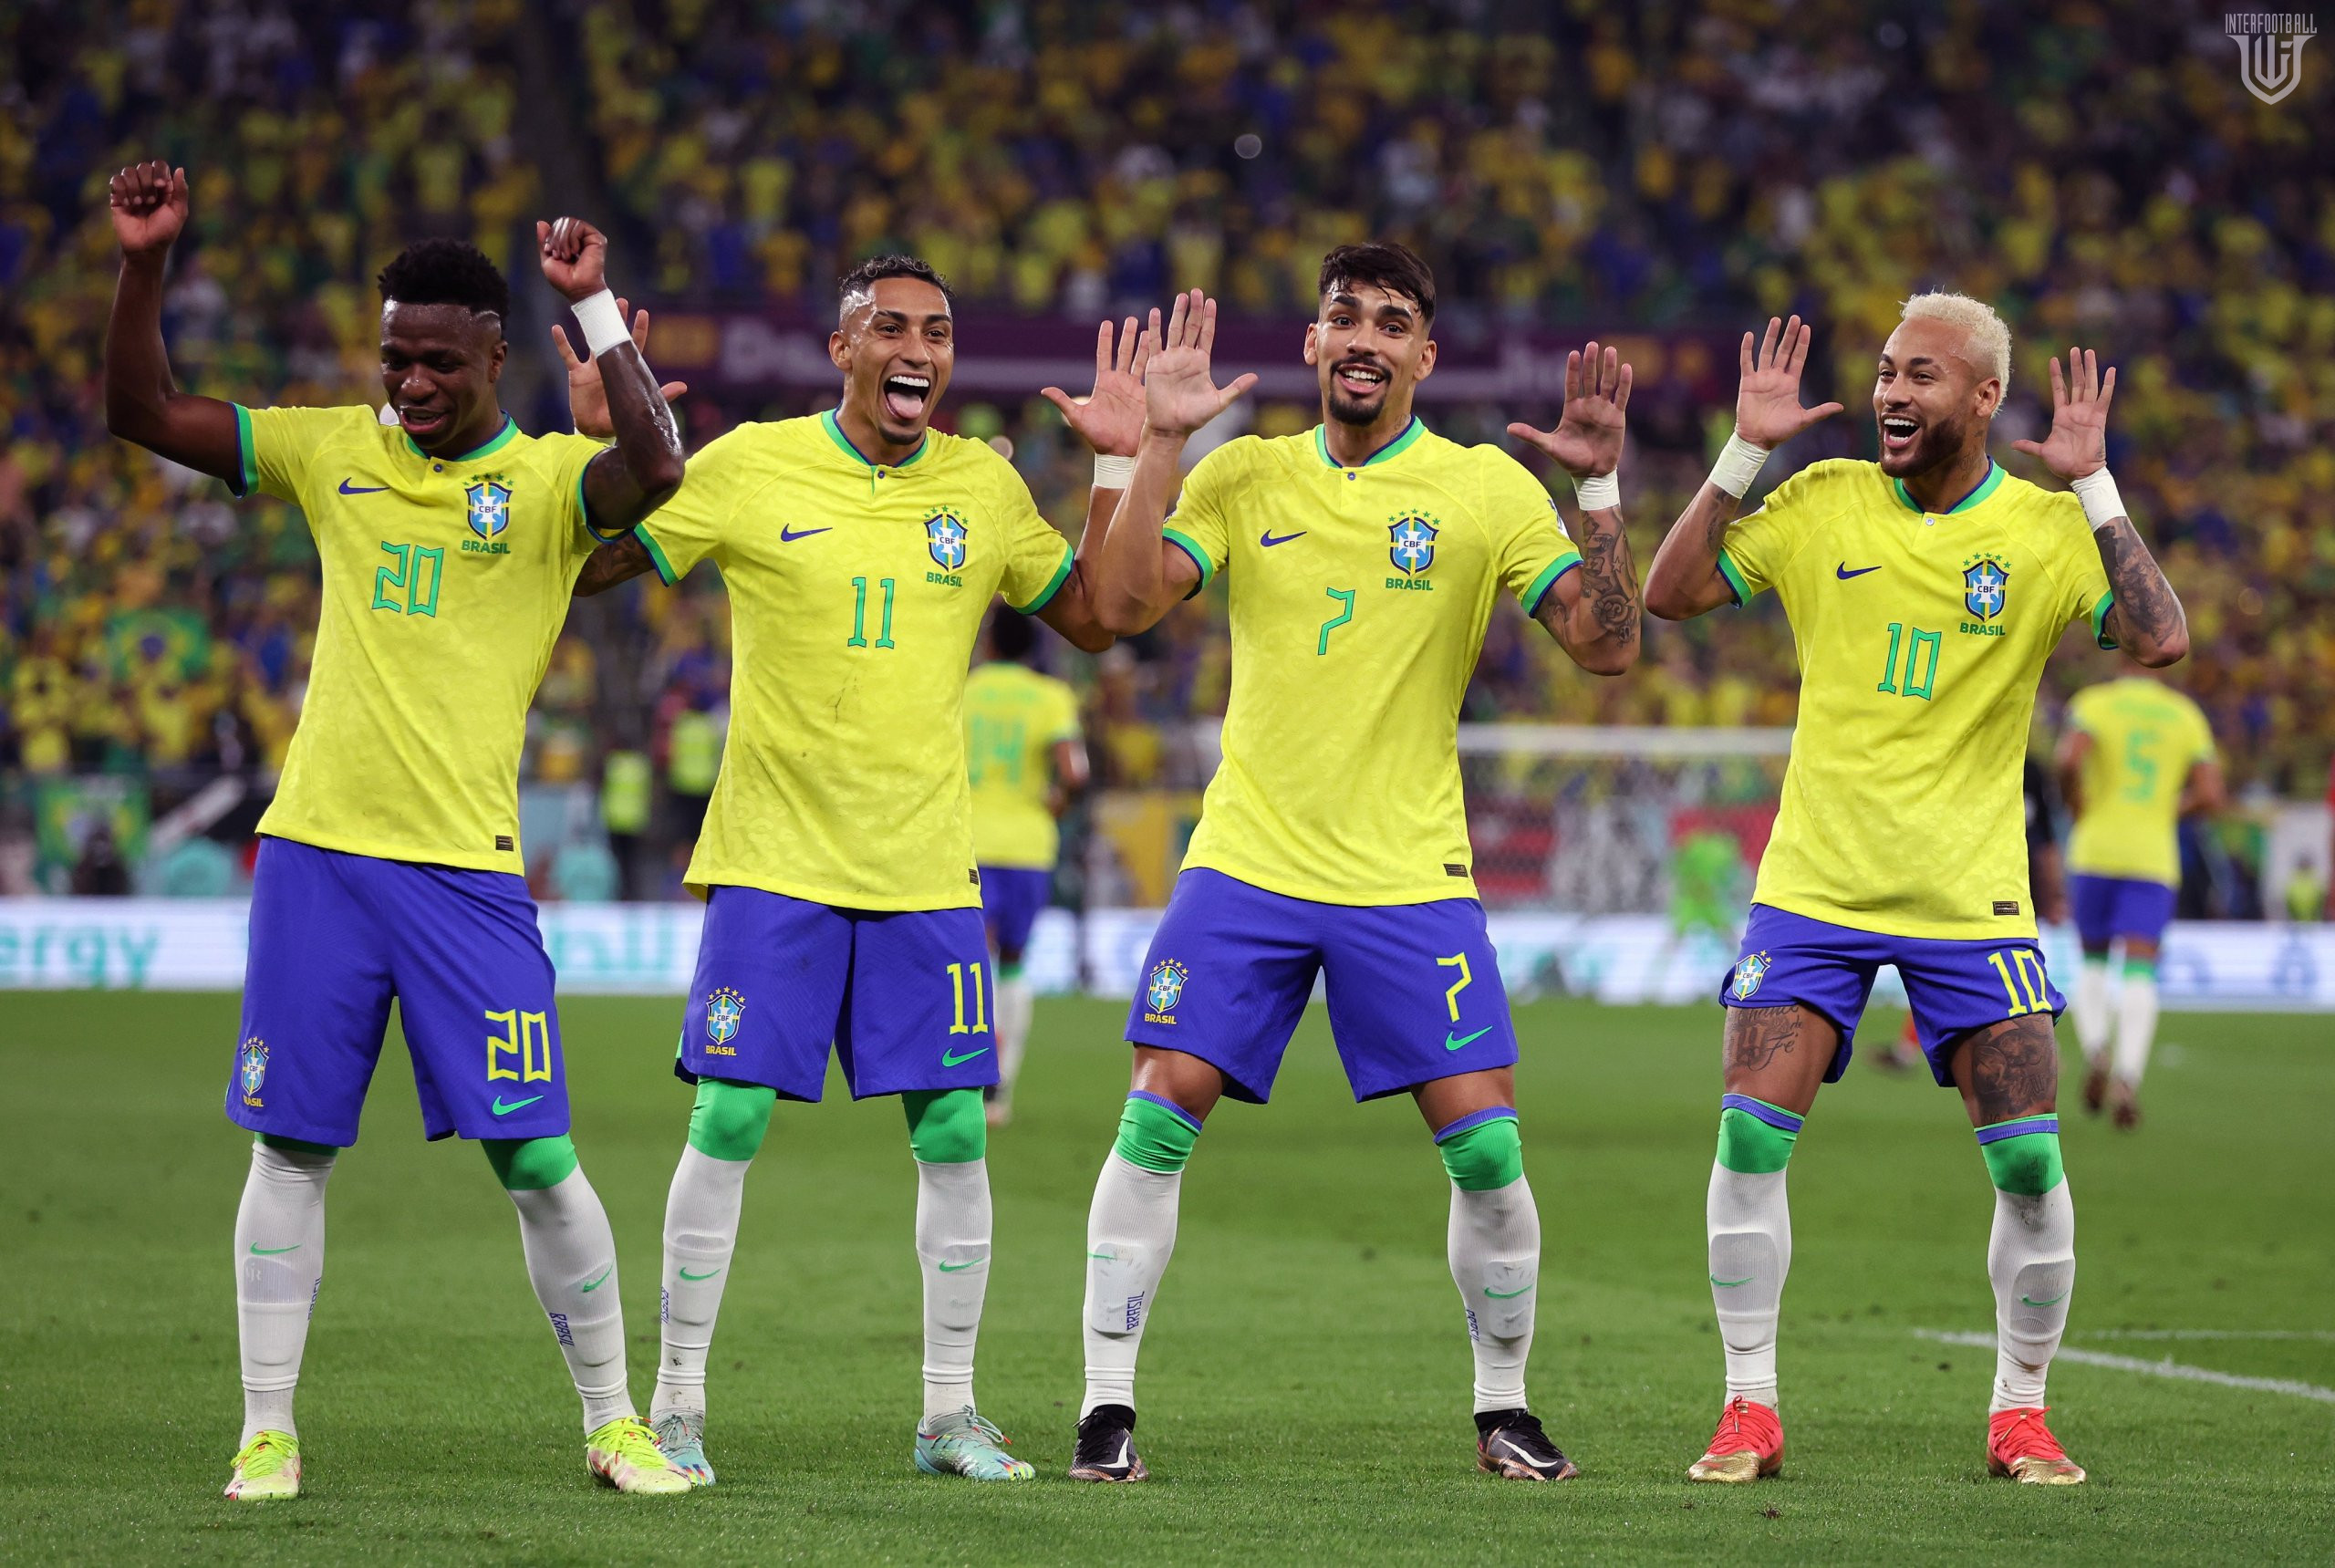 Բրազիլական սամբա Դոհայում! «պենտակամպիոնները» փայլուն խաղով ջախջախեցին Հվ. Կորեային` դուրս գալով ԱԱ-2022-ի 1/4 եզրափակիչ🎥